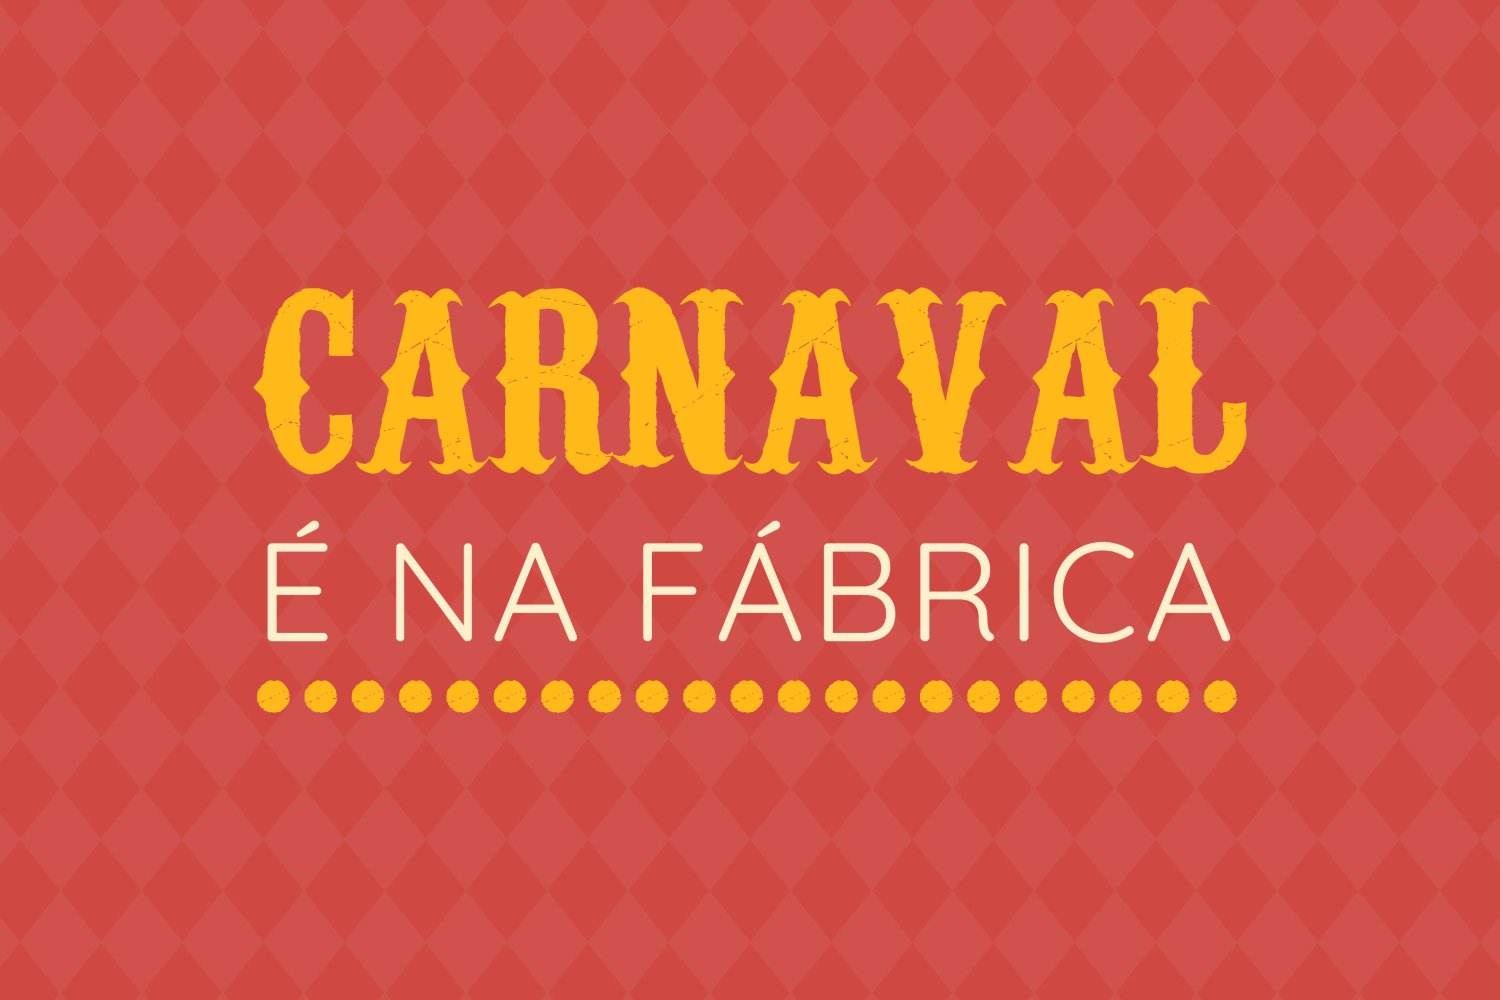 Carnaval na Fábrica Centro Ciência Viva de Aveiro